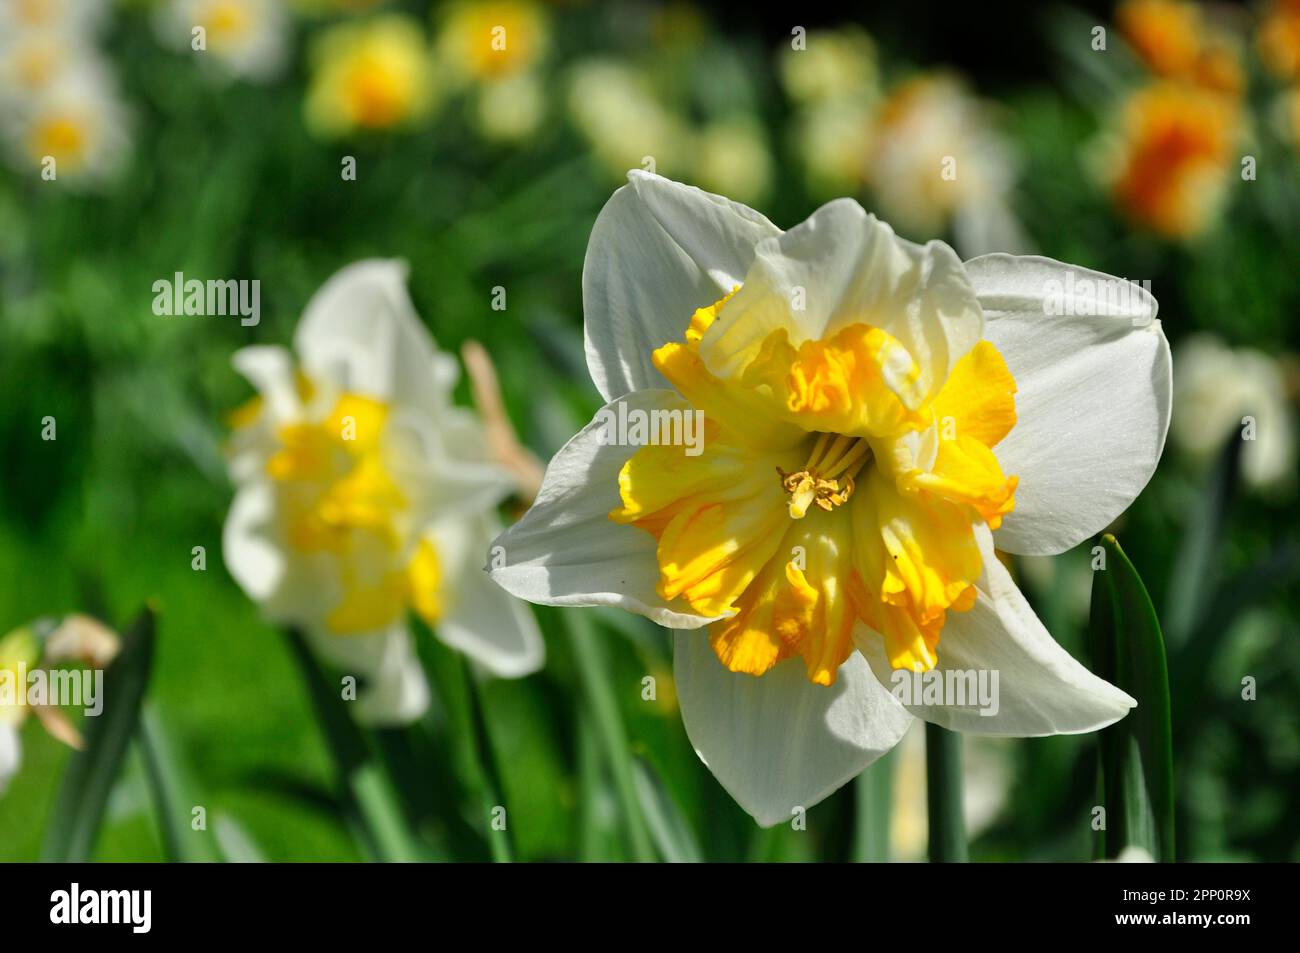 Une tête de fleur de jonquille montrant des pétales blancs et une coupe de couleur jaune vif corona.Spring bulbes à fleurs. Wiltshire, Angleterre Banque D'Images